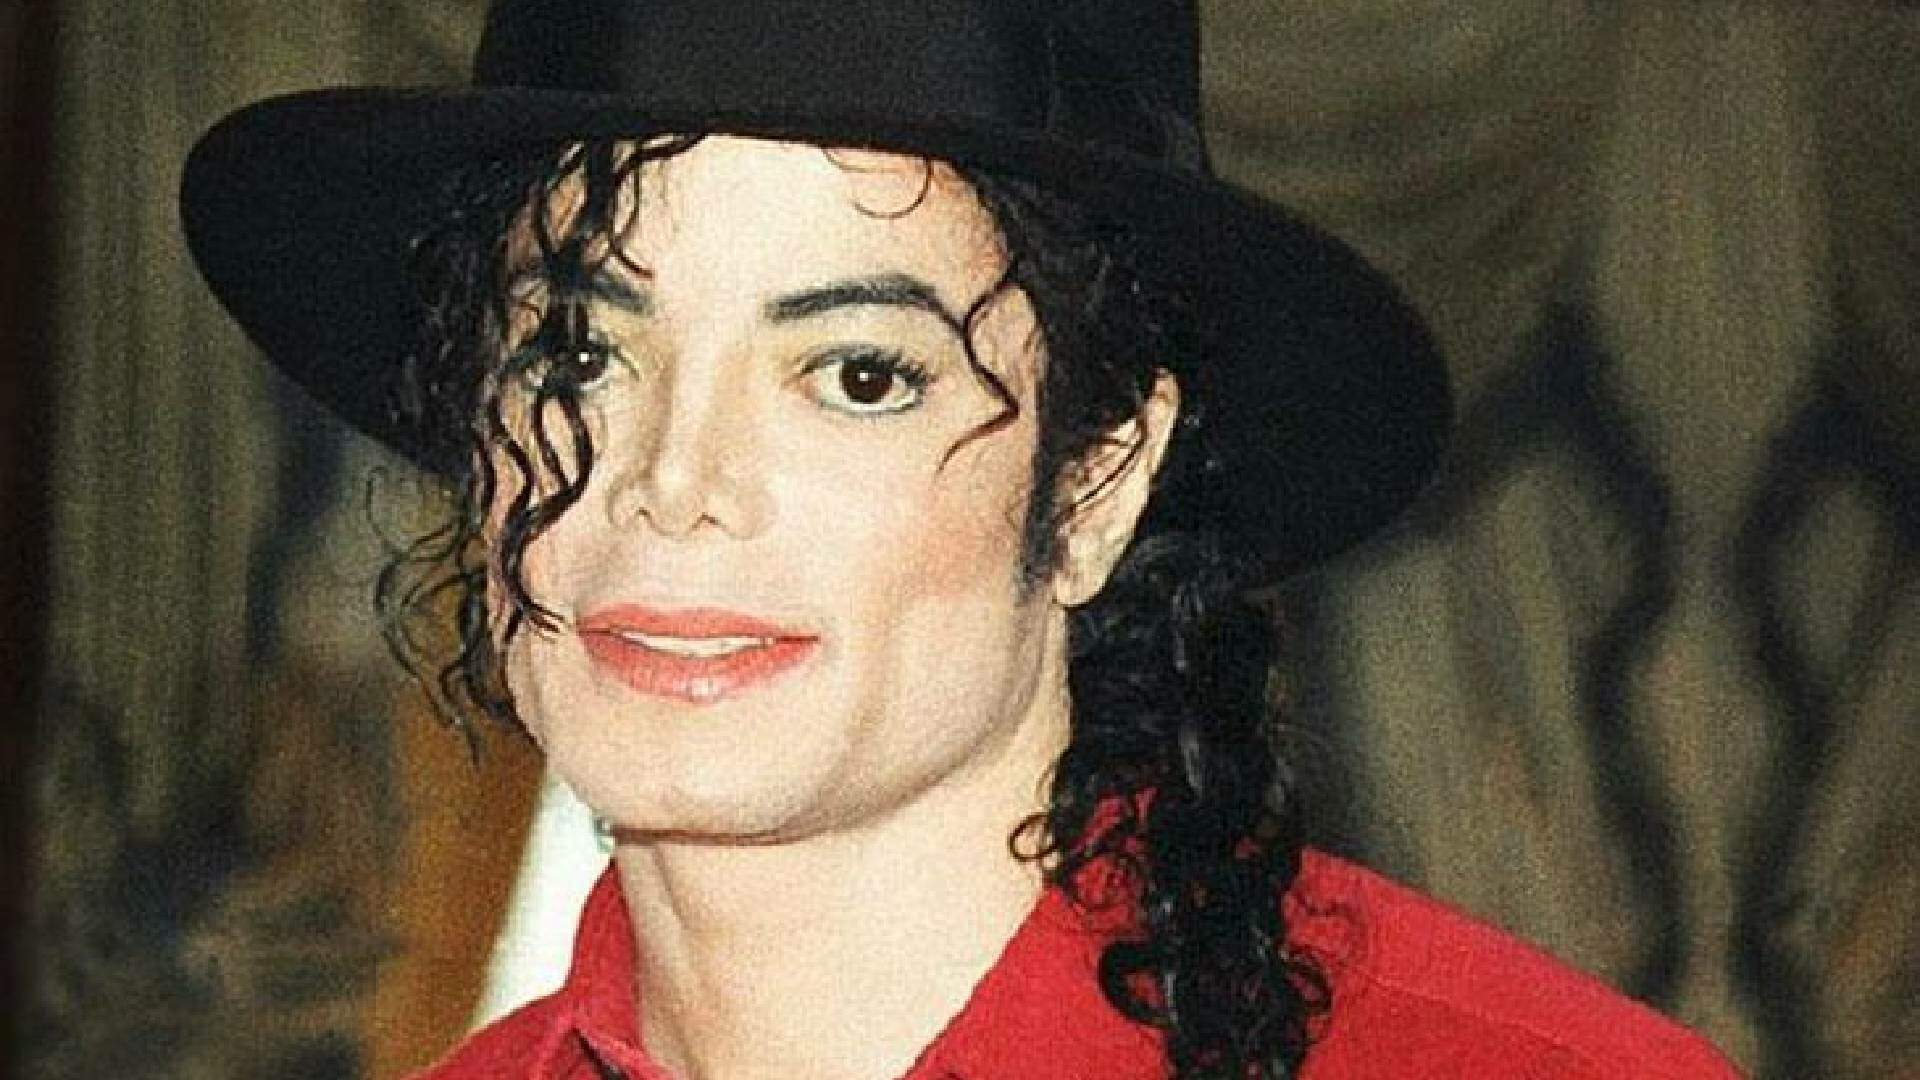 Gravadora ‘some’ com três músicas póstumas de Michael Jackson após decisão polêmica - Metropolitana FM